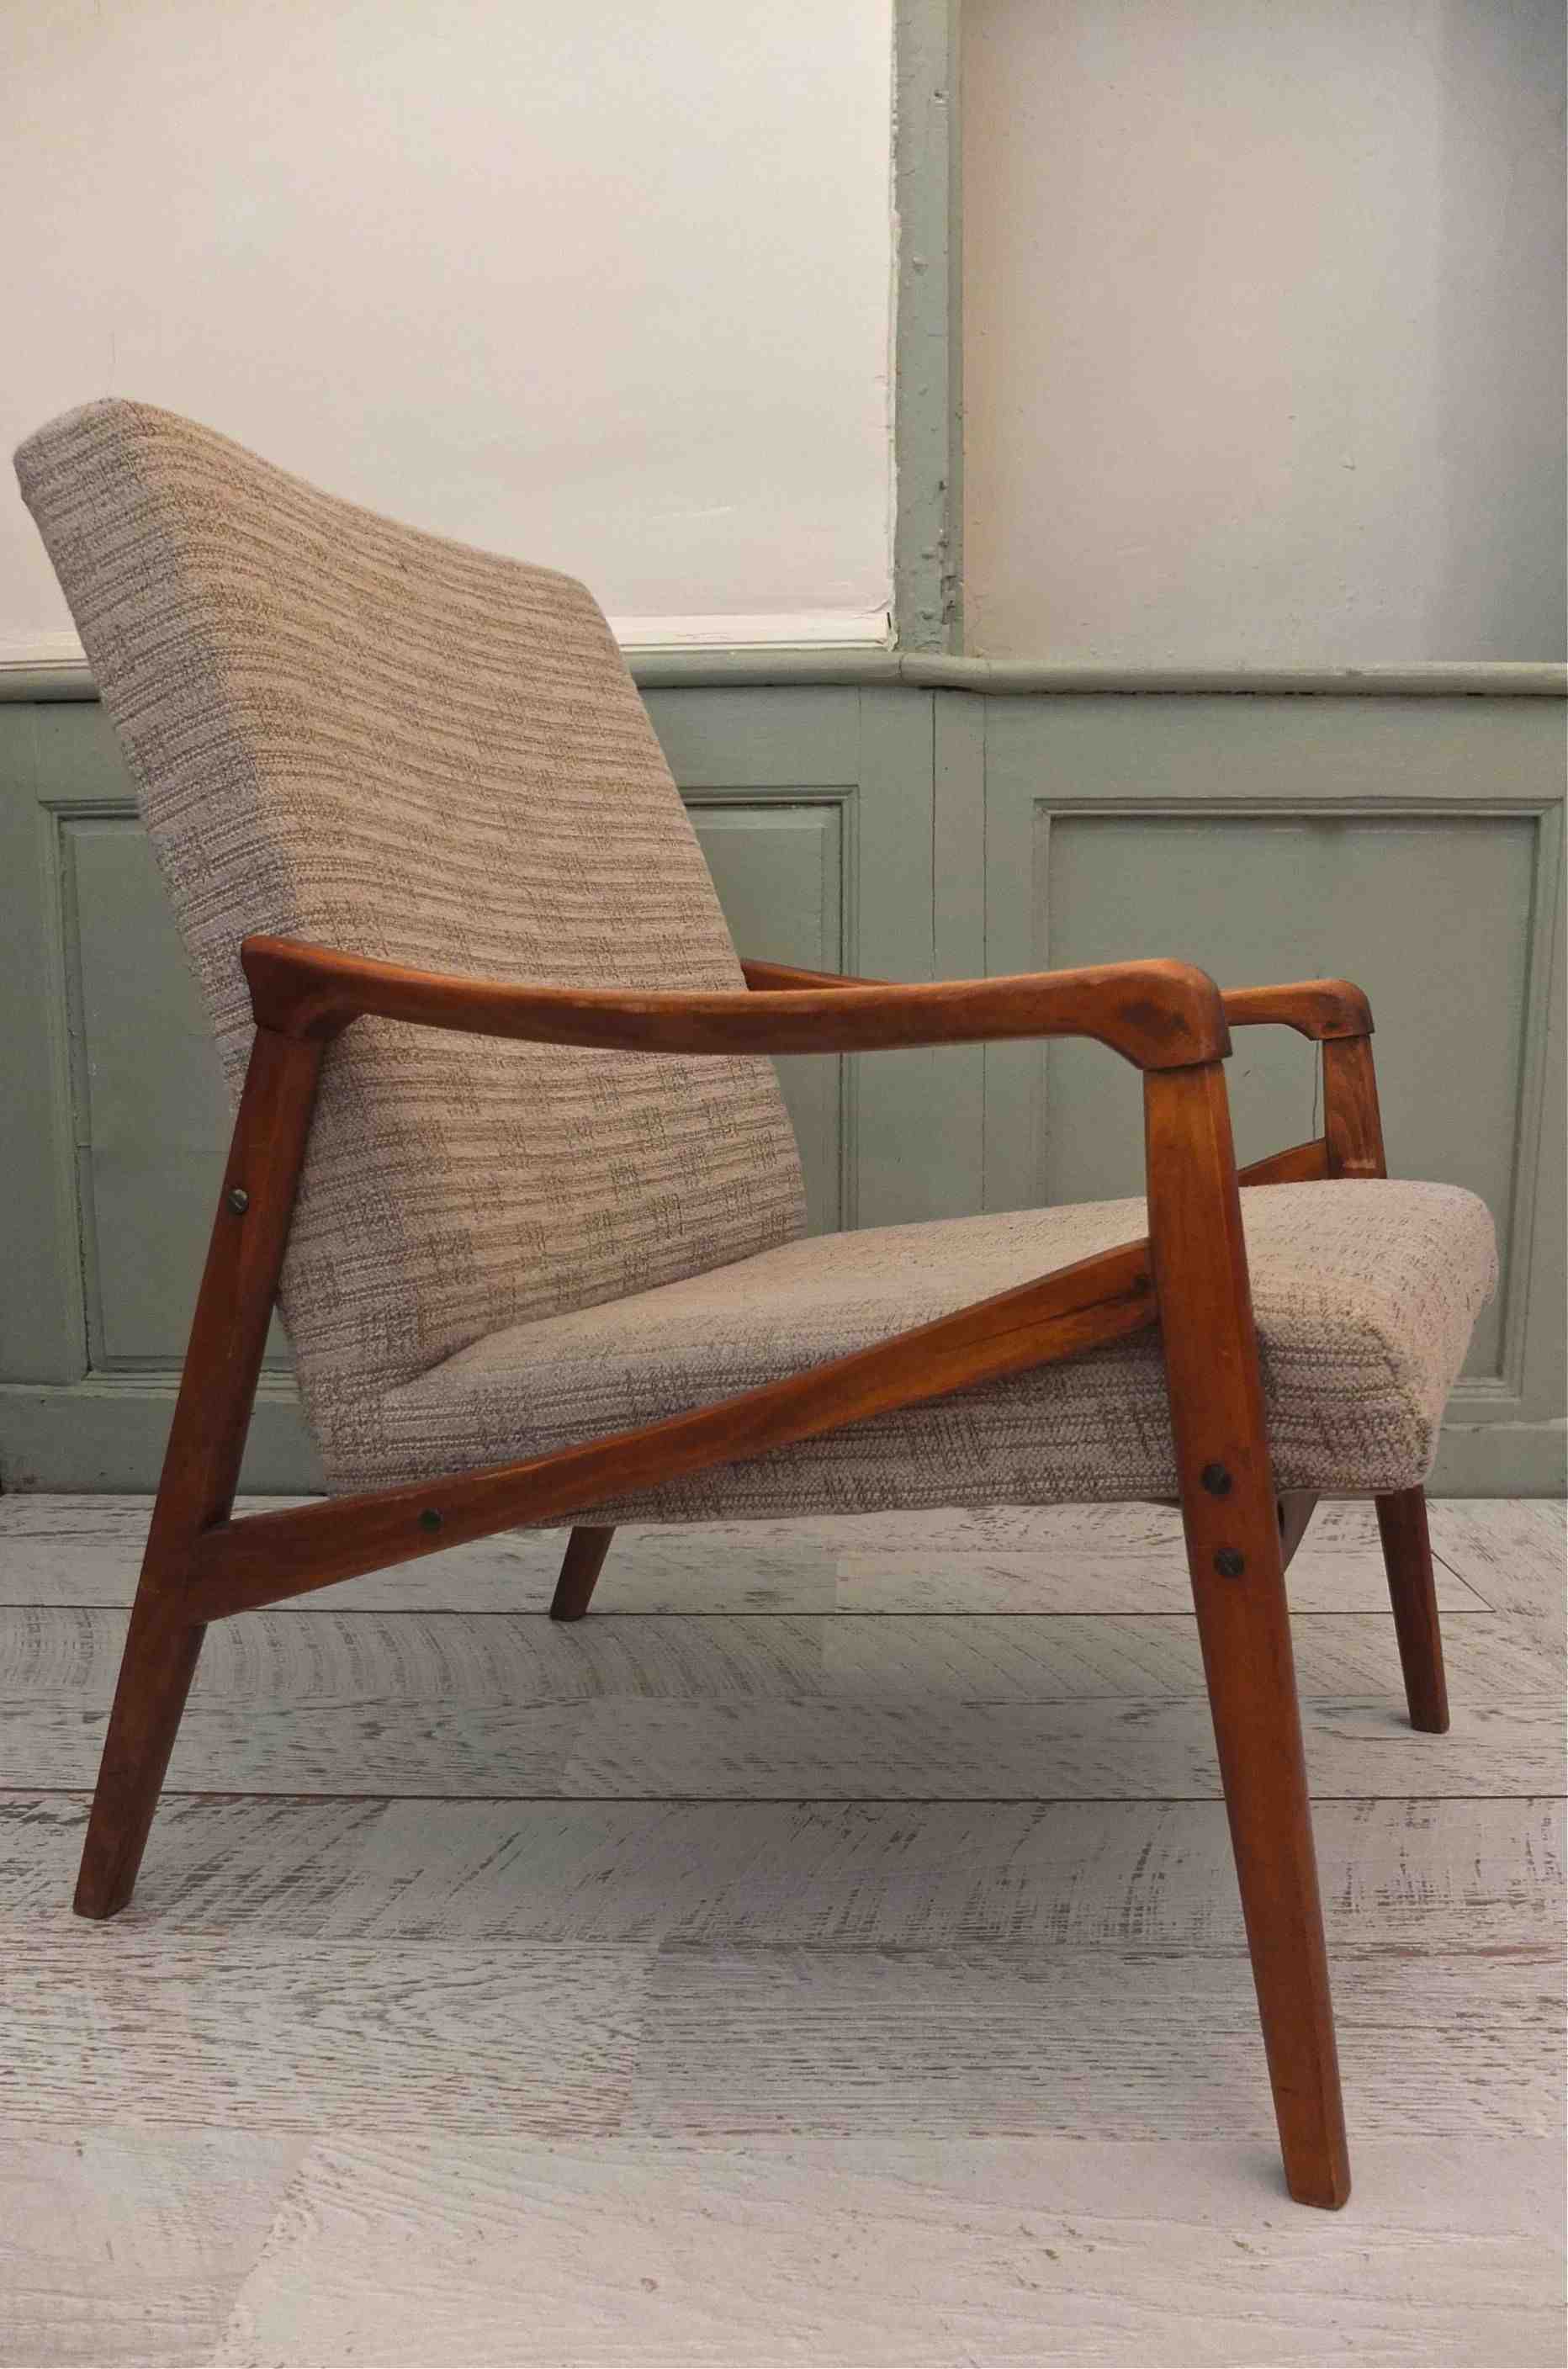 Slavia Vintage fauteuil Borgen années 50 style scandinave